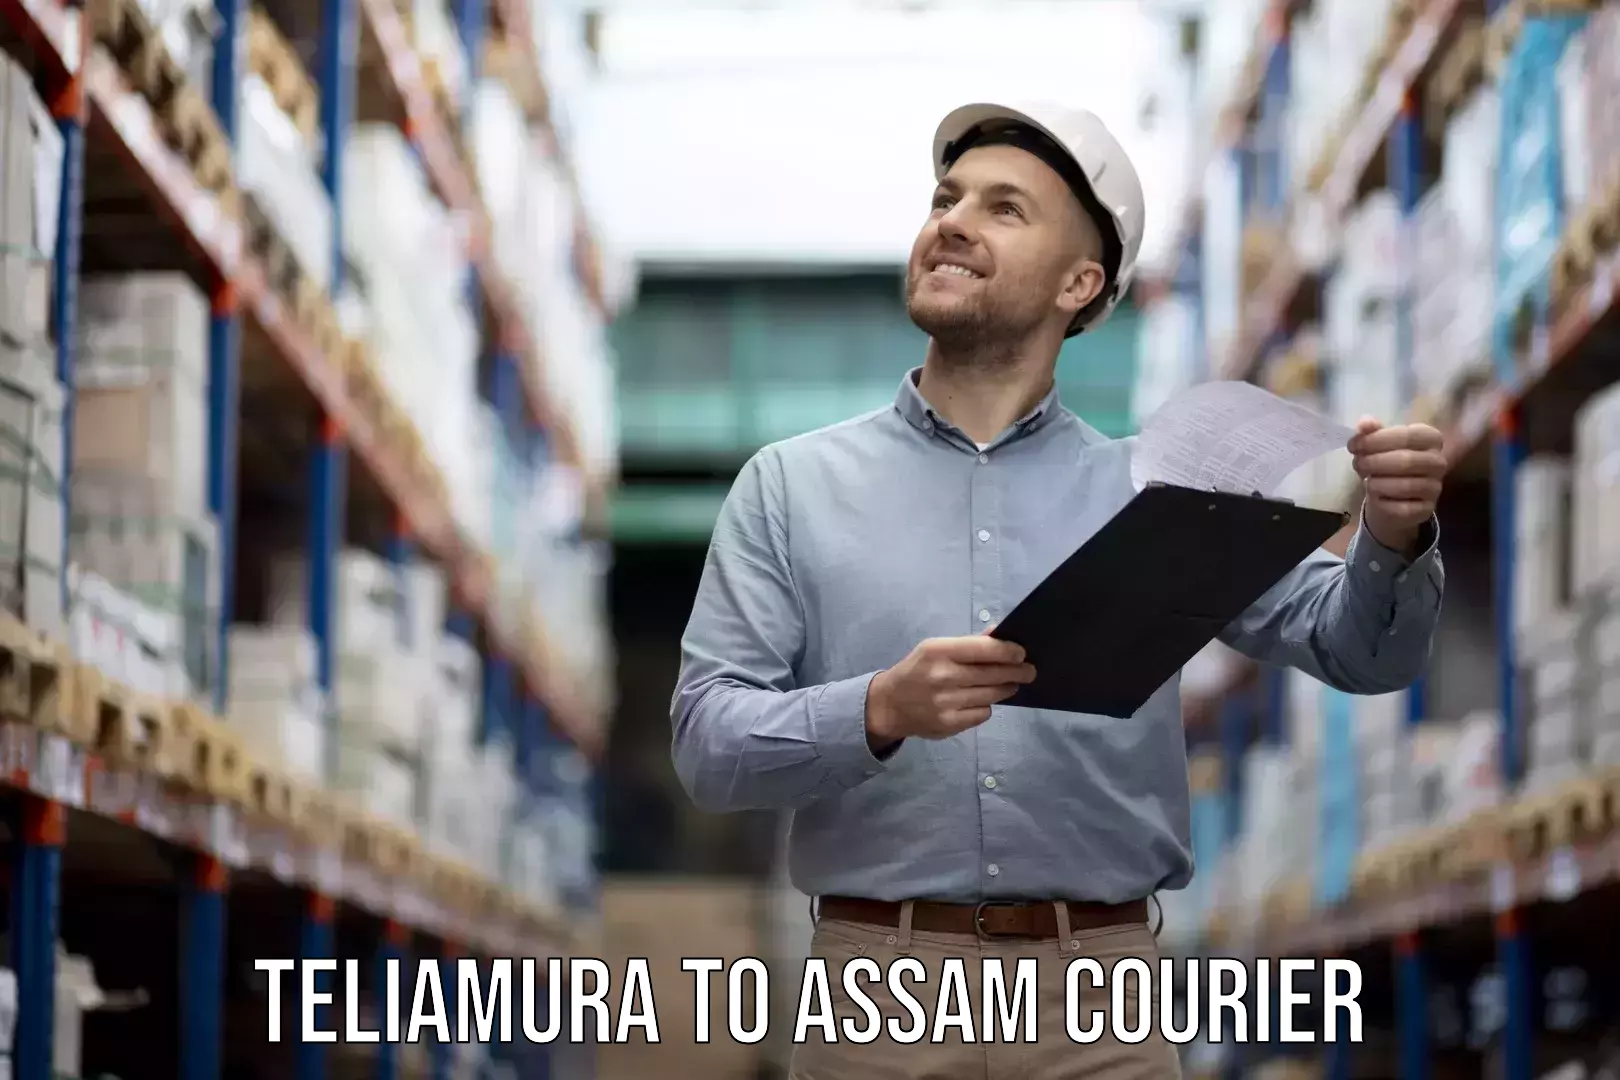 Home goods moving company Teliamura to Lala Assam